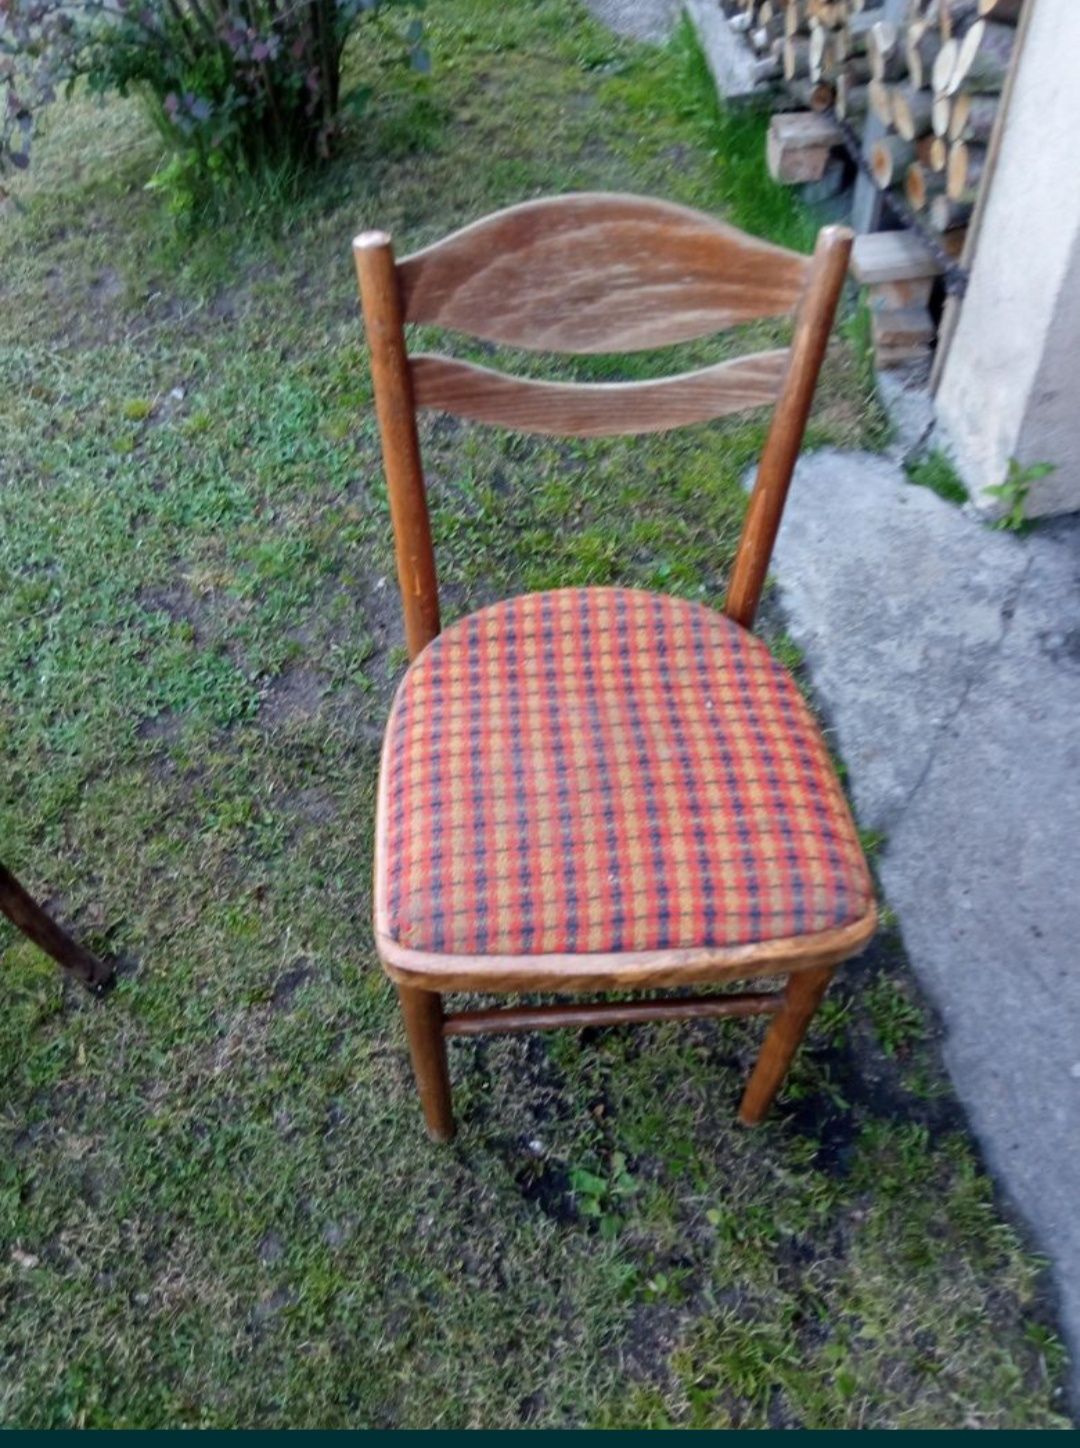 Stare gięte krzesła